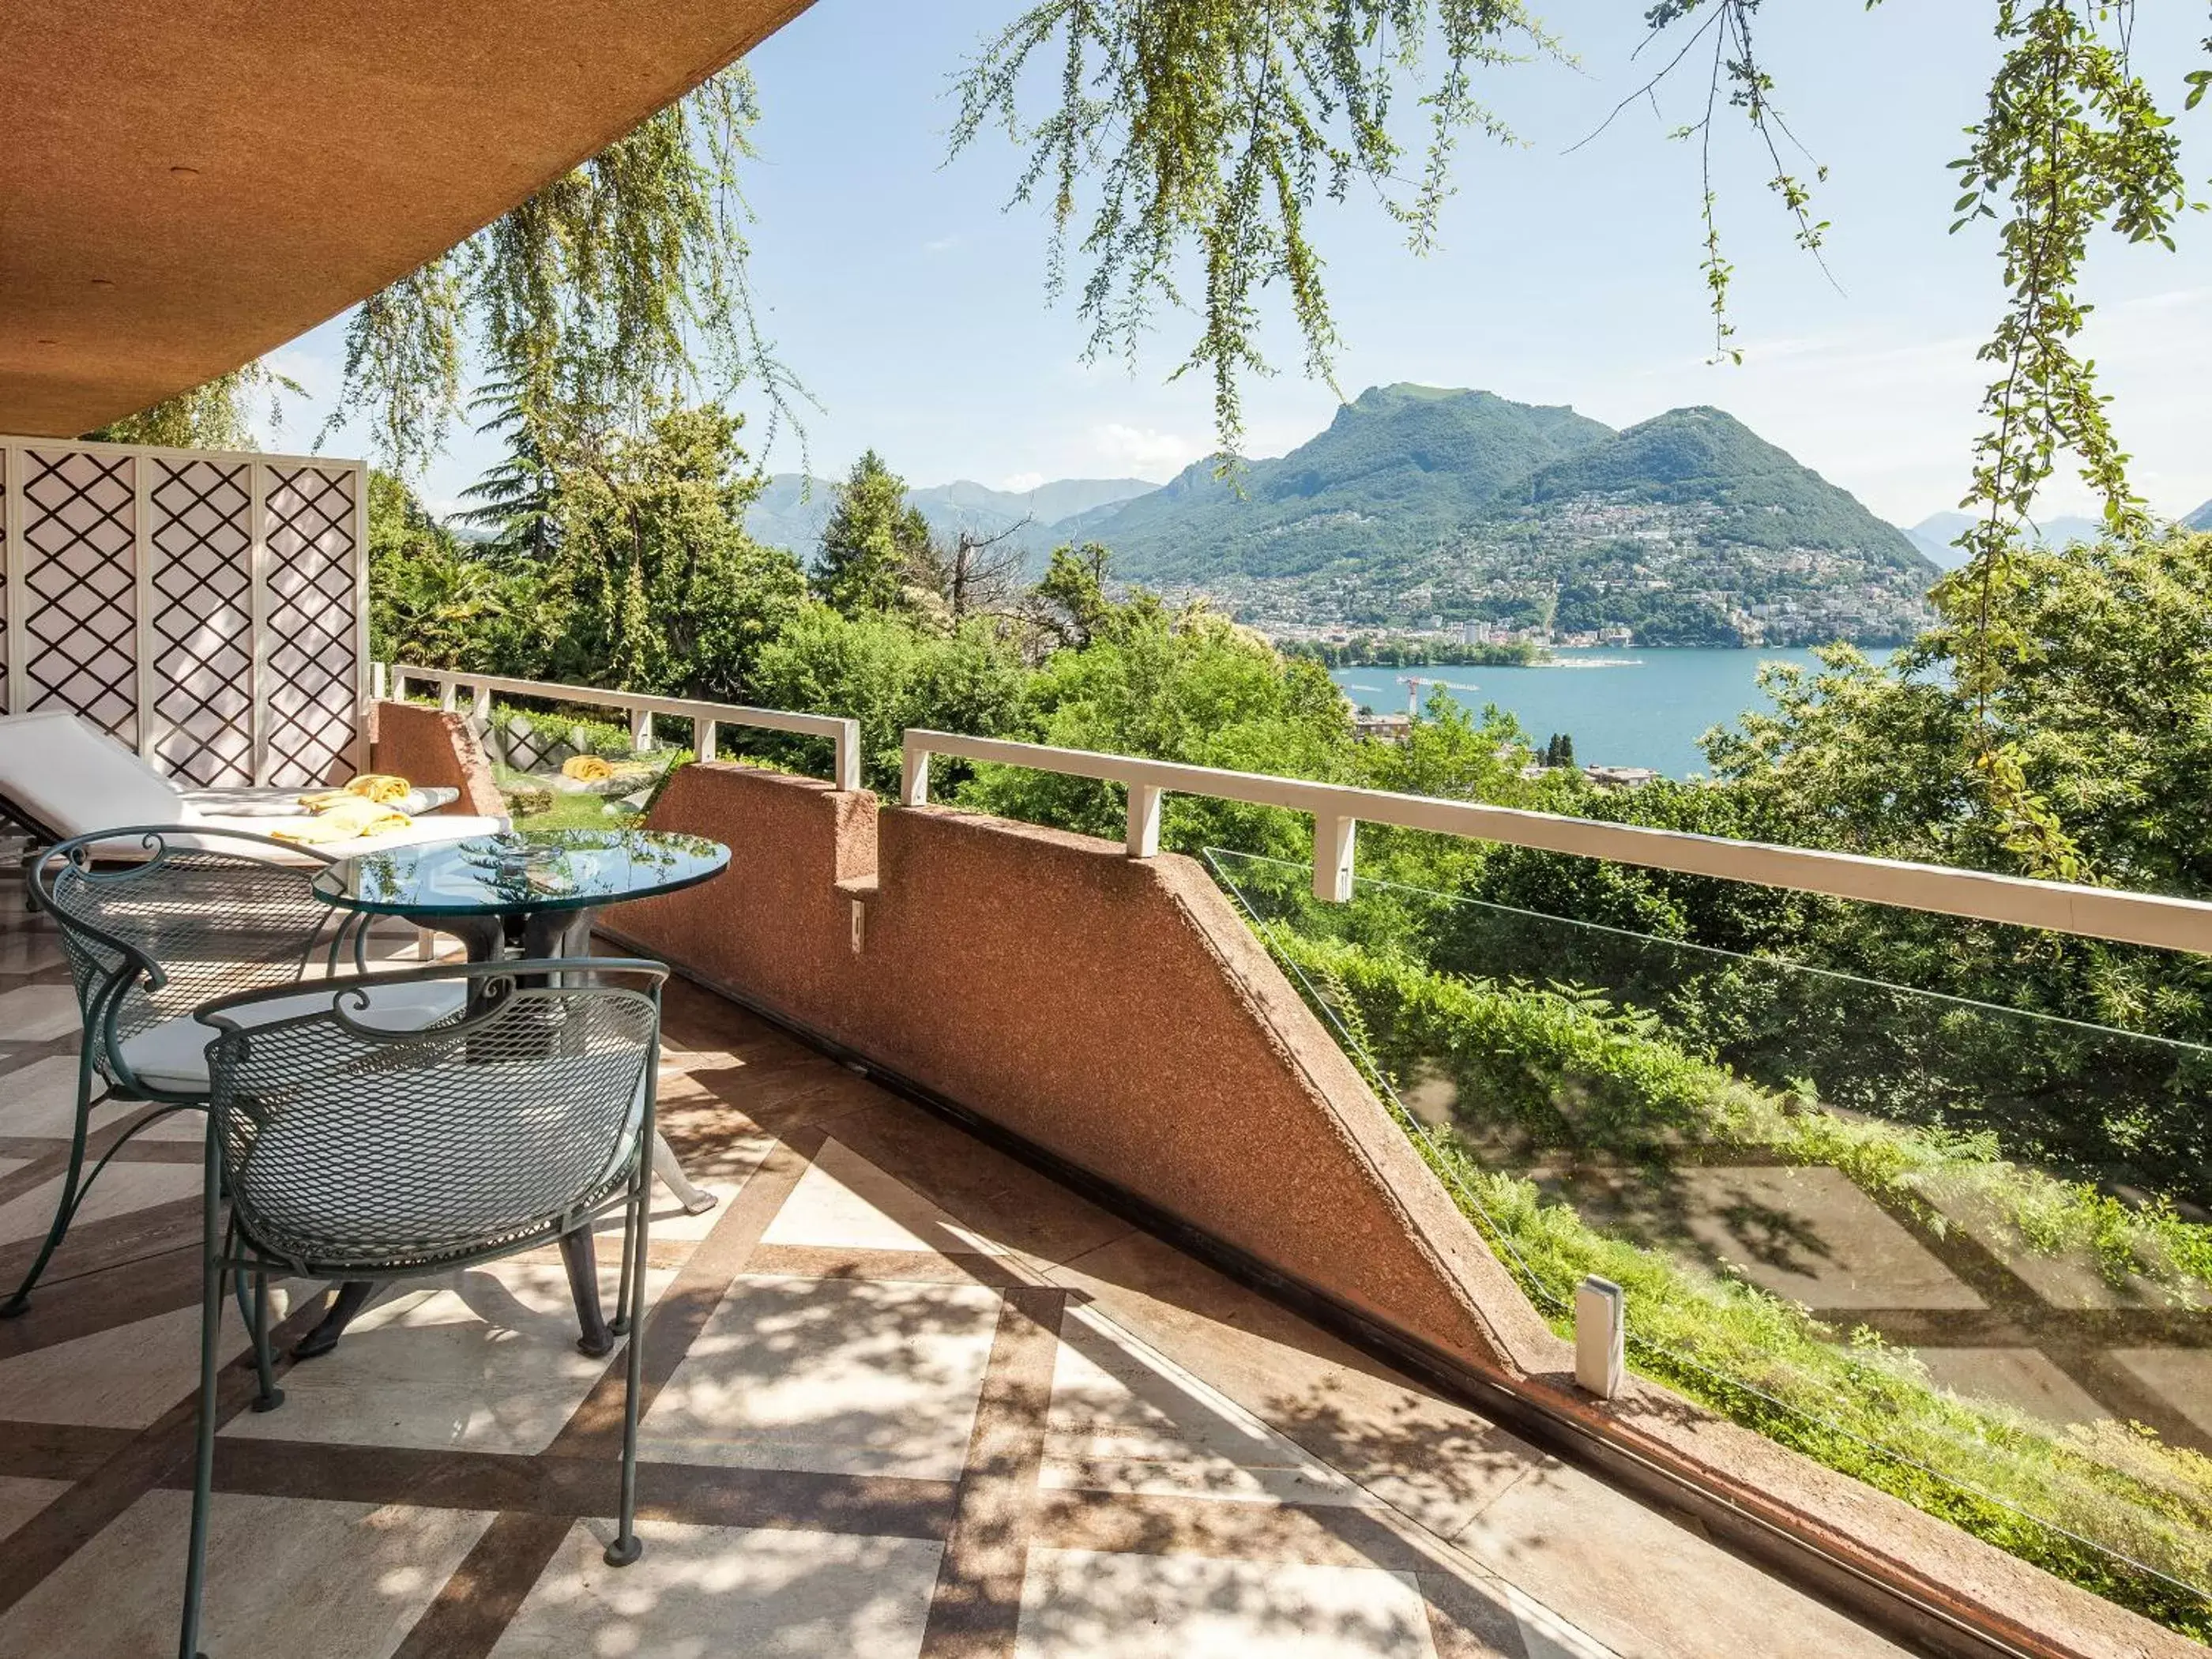 Lake view in Villa Principe Leopoldo - Ticino Hotels Group